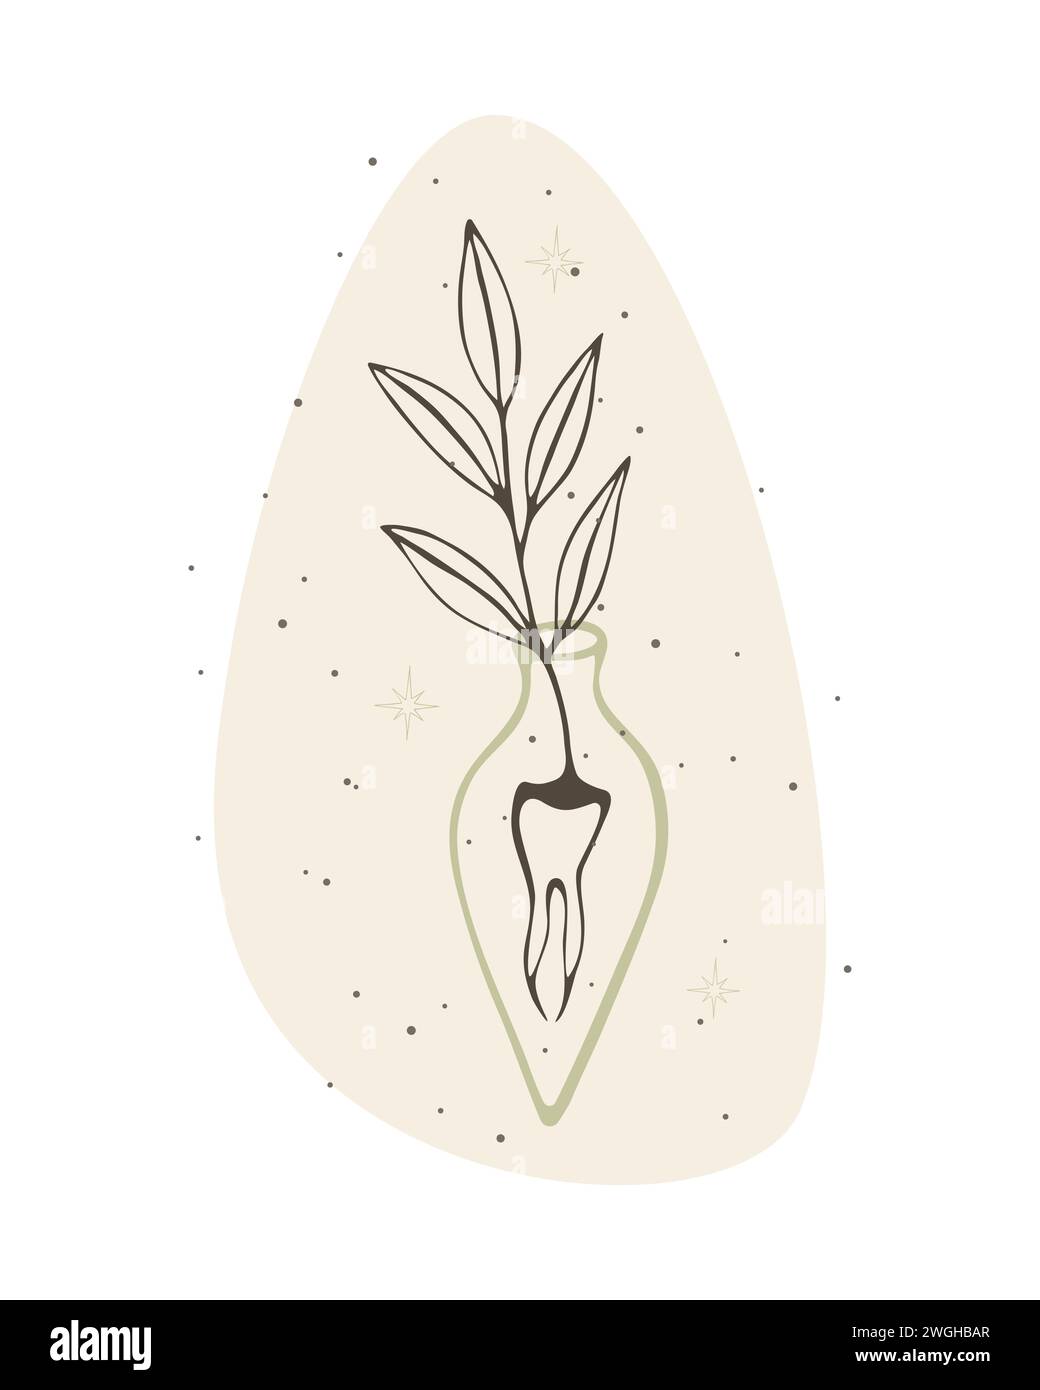 Geheimnisvolles magisches Gift. Illustration einer unwirklichen Pflanze, die aus der Zahnwurzel auftaucht, auf buntem beigem Hintergrund, Trank, Taro, Hexenflasche Stock Vektor